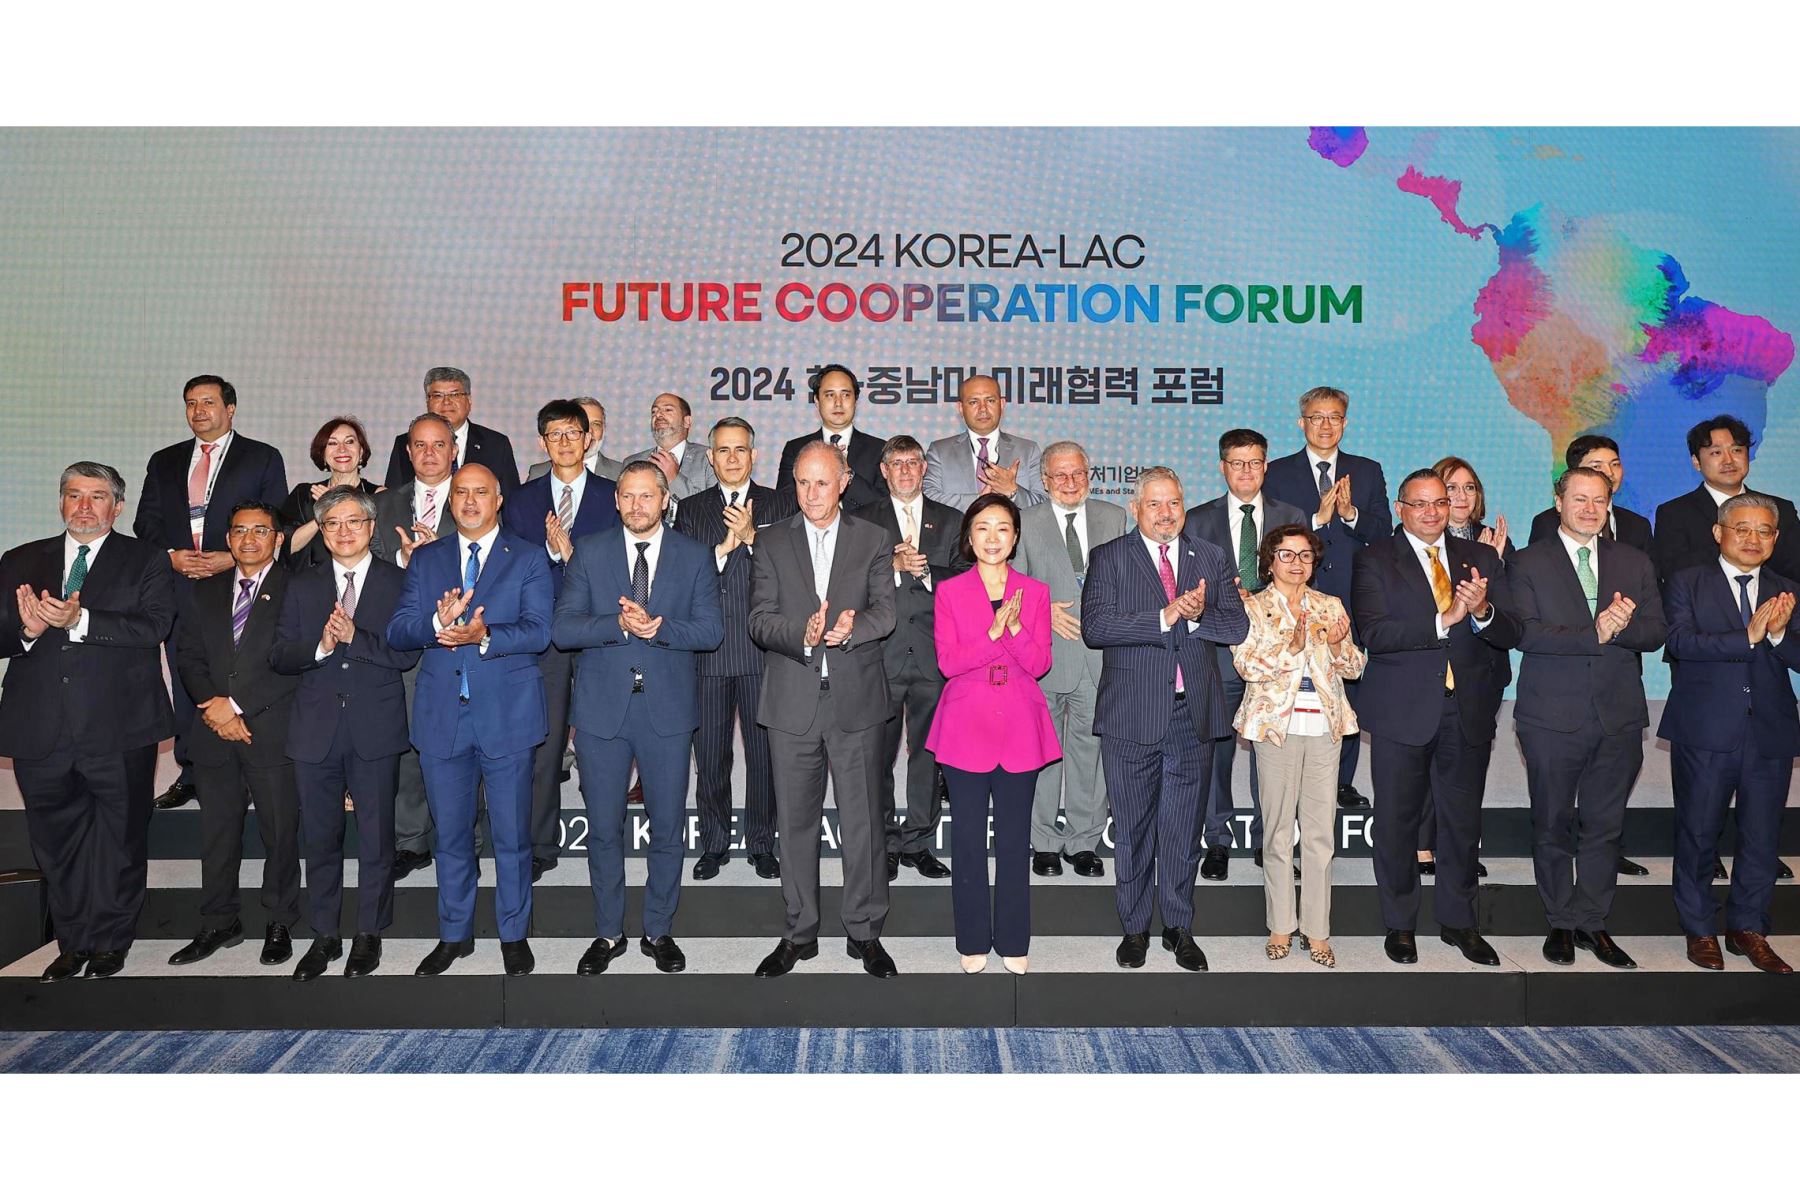 El Ministro de Pymes y Startups, Oh Young-ju, hace una foto con otros participantes, incluido el Ministro de Asuntos Exteriores peruano, Javier González-Olaechea, durante el foro de cooperación futura entre Corea y ALC 2024 en un hotel en Seúl, Corea del Sur, el 10 de junio de 2024. Foto: AFP